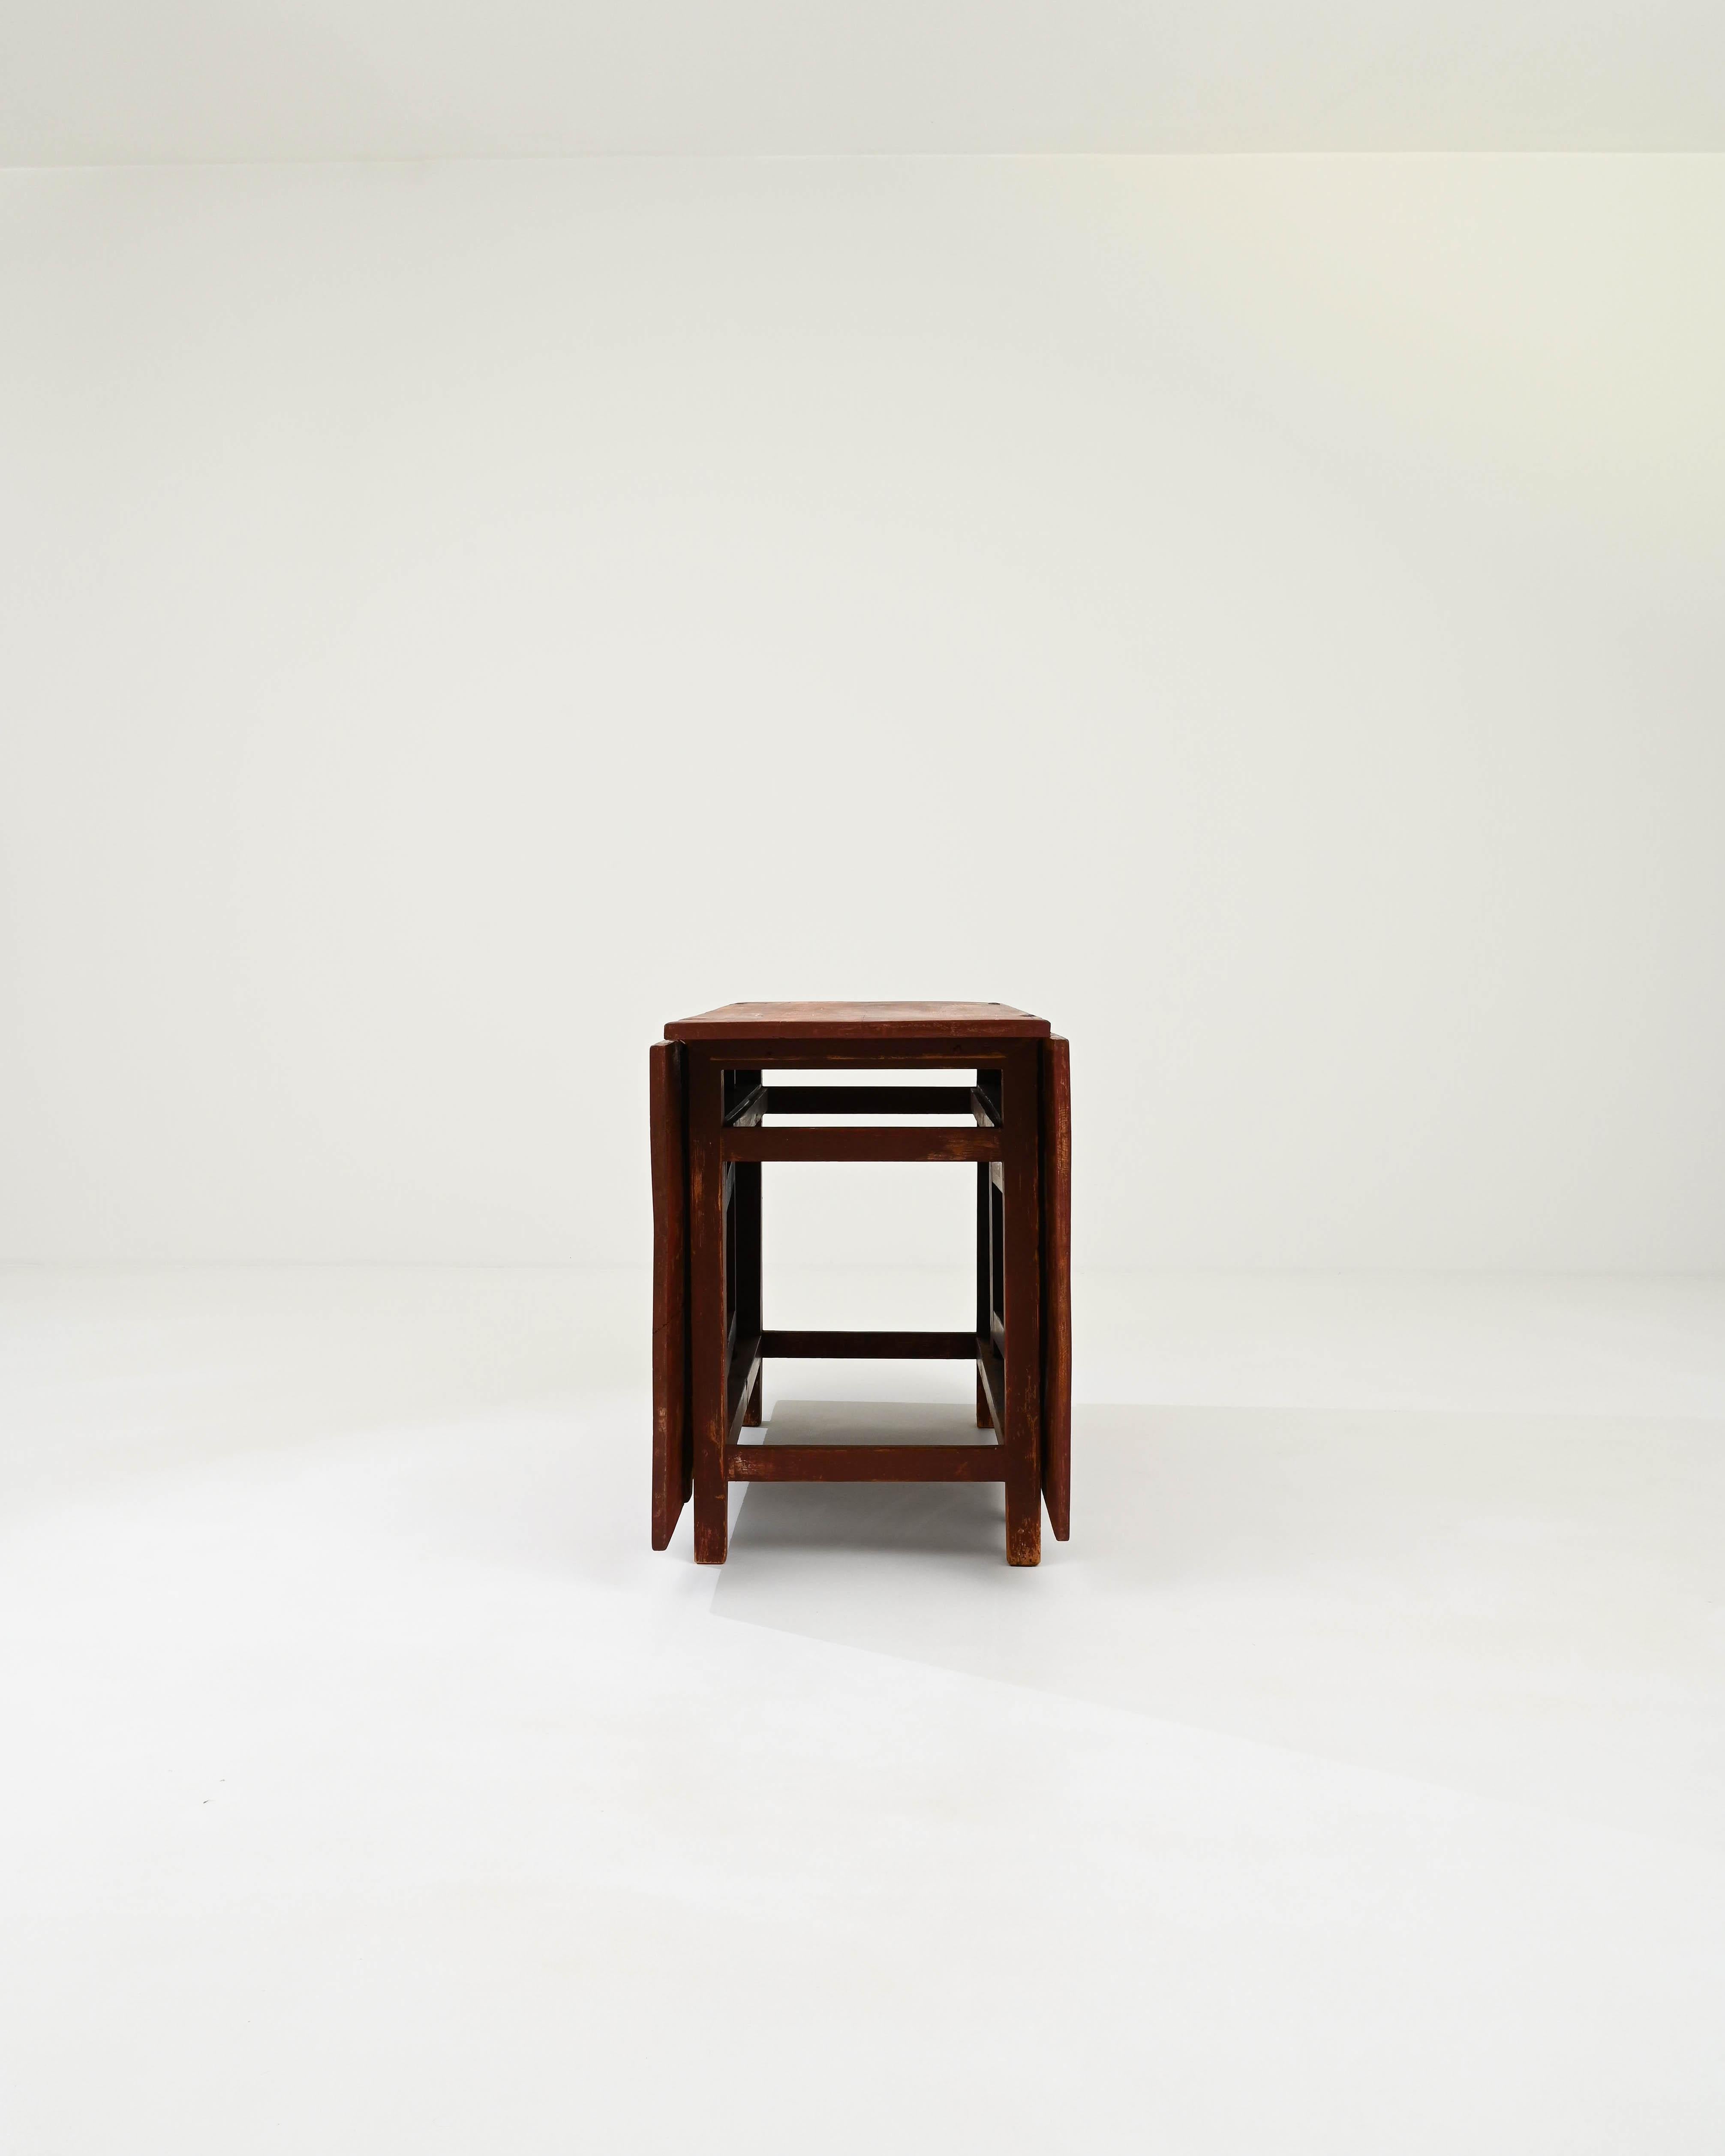 Une table en bois créée au 19e siècle en Suède. Rappelant une époque plus simple, cette charmante table à feuilles tombantes confère une aura curieuse. Les deux grandes feuilles s'élancent de chaque côté et sont soutenues par un ensemble de supports